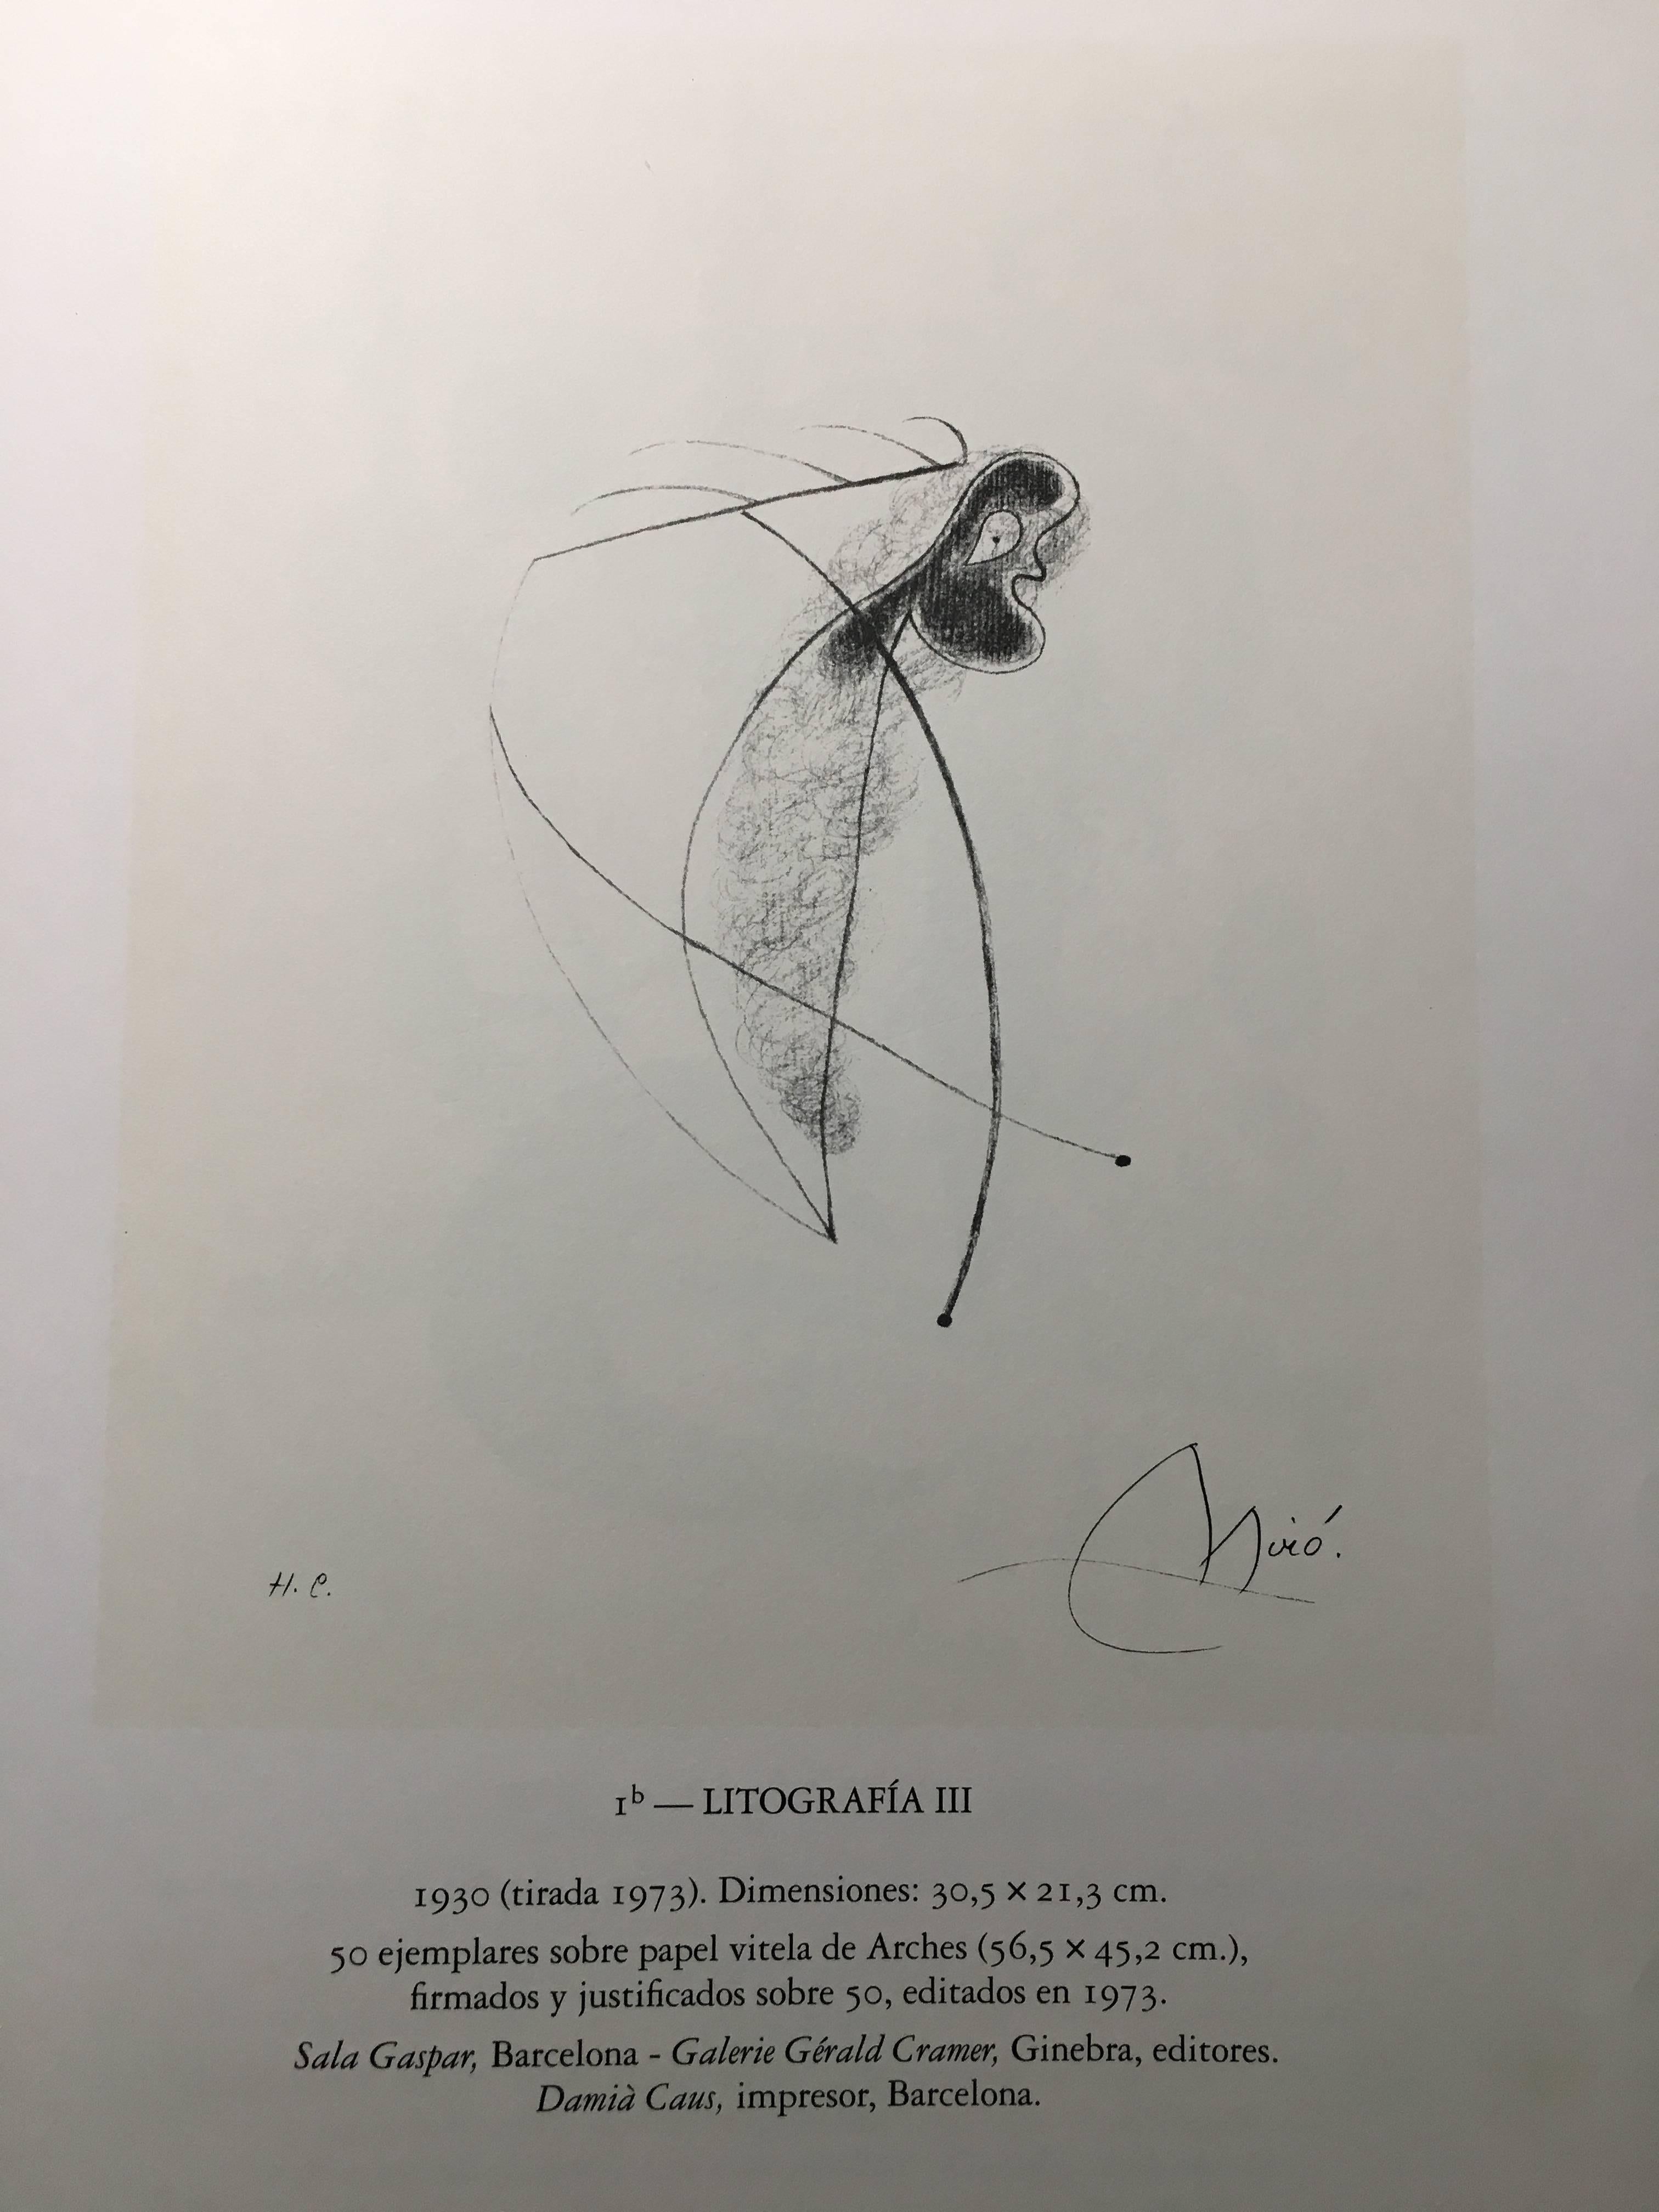 LITOGRAFIA III - Print by Joan Miró